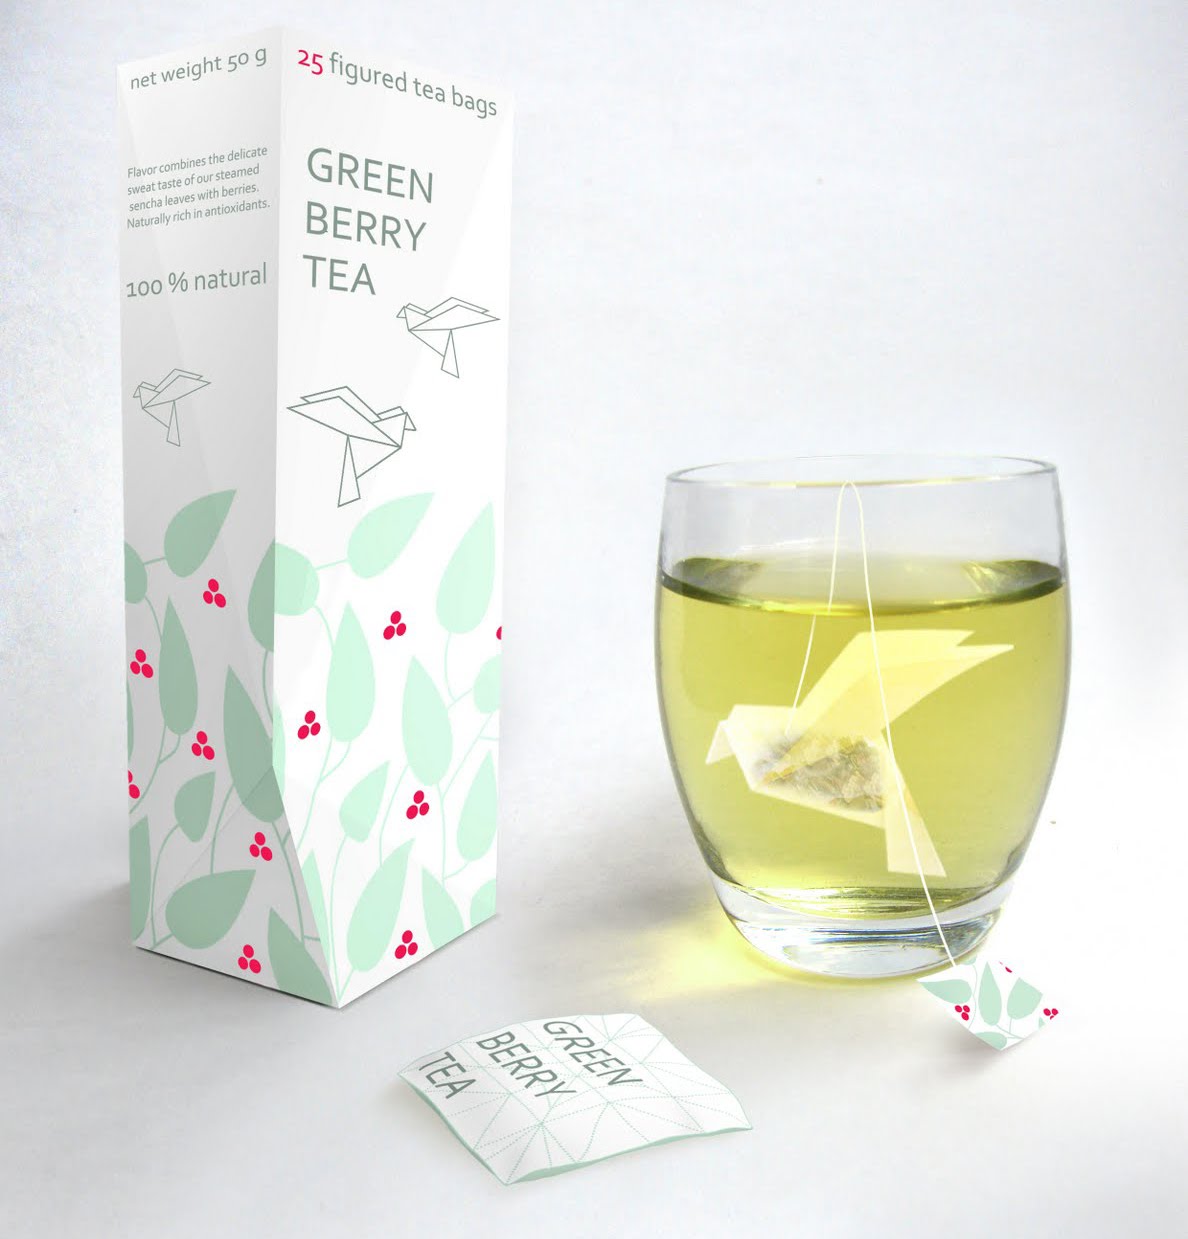 Figured tea Bags - Green Berry Tea